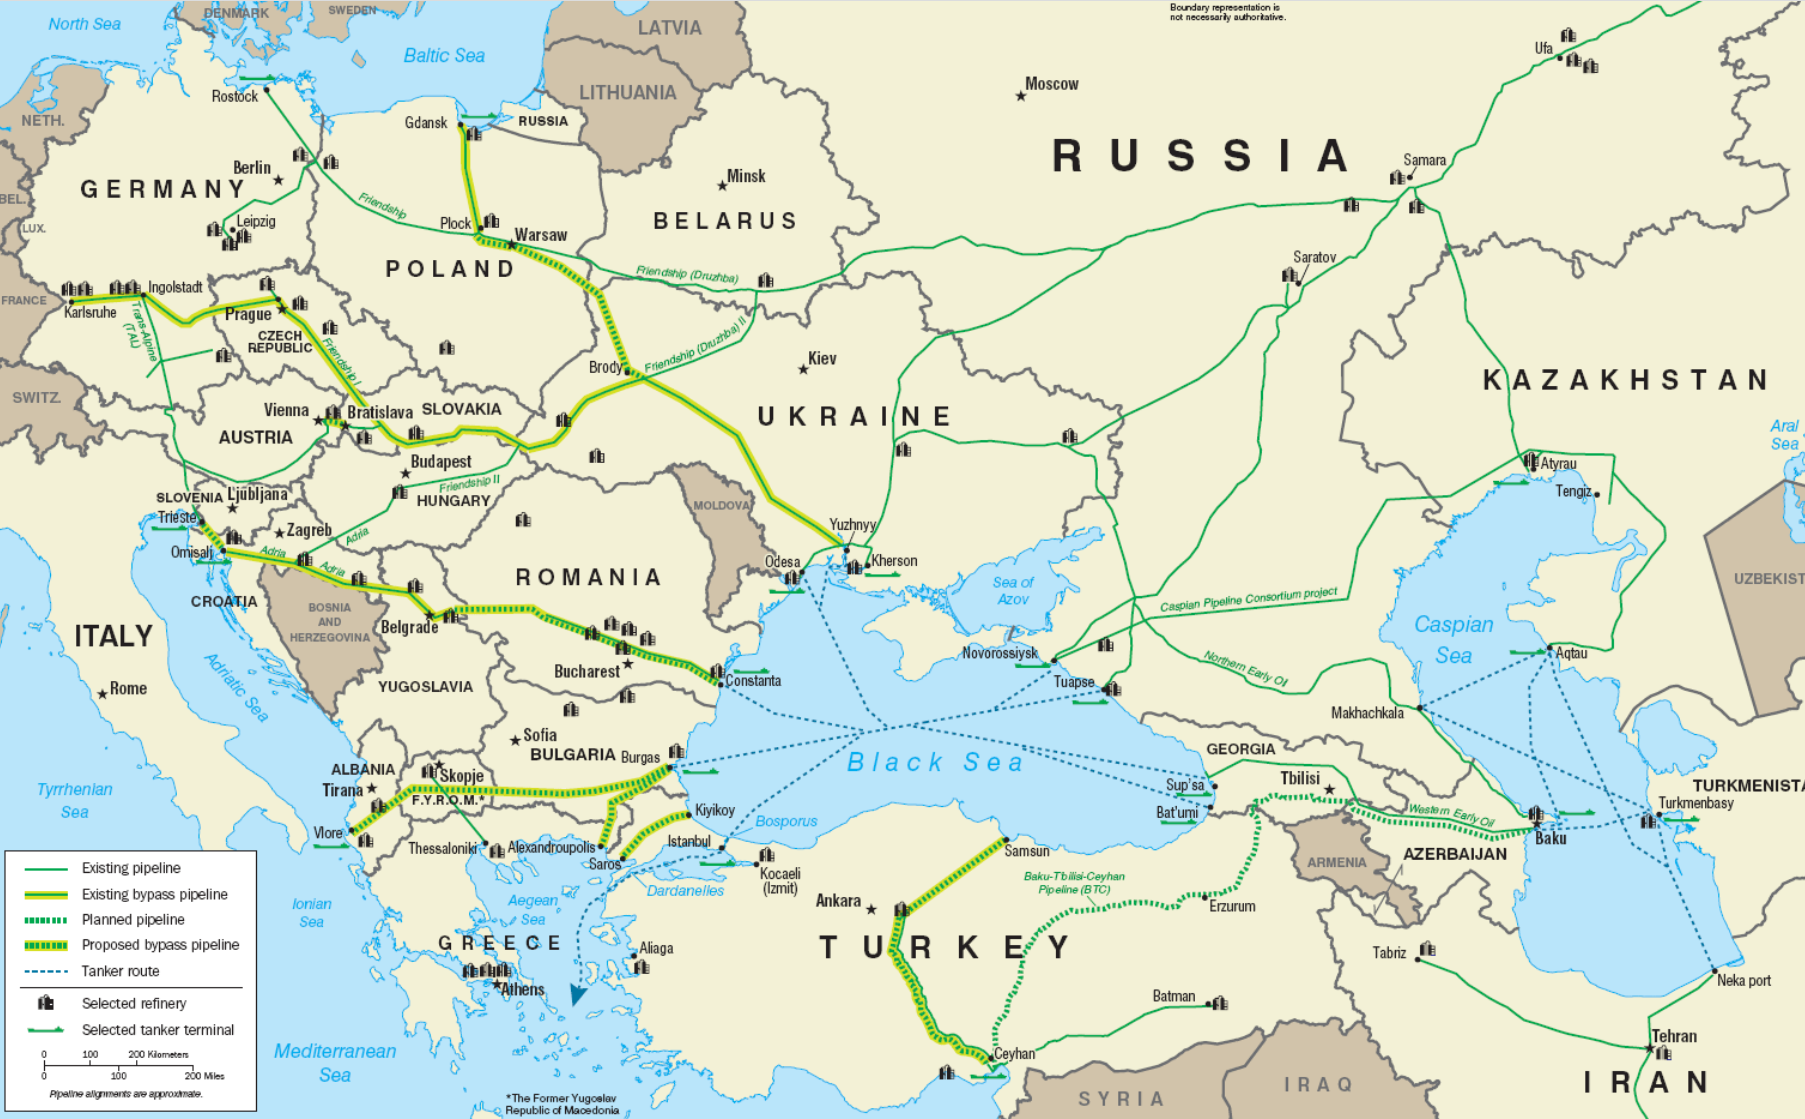 德国将途经俄罗斯进口哈萨克斯坦原油 直言“调和油”也无妨